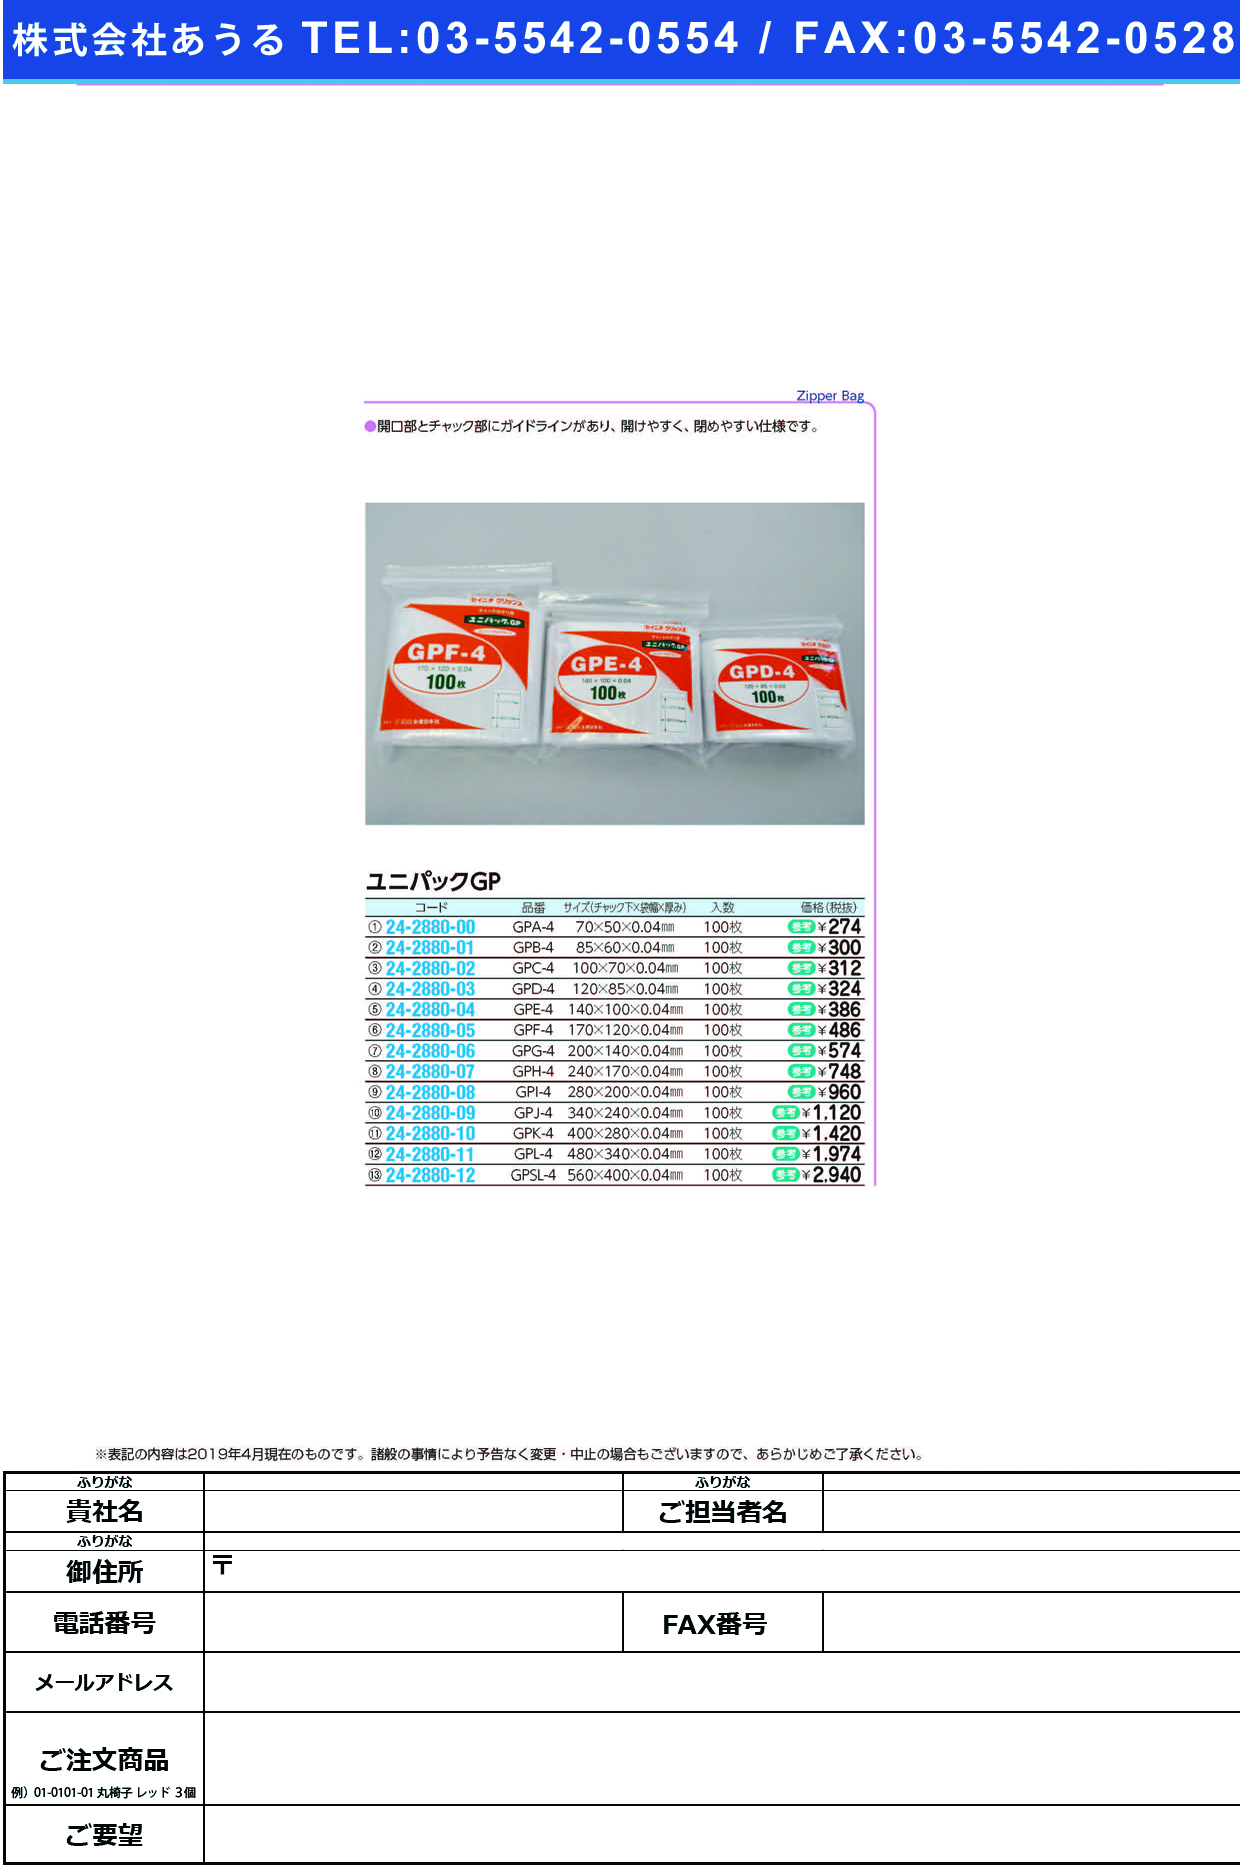 (24-2880-08)ユニパックＧＰ GPI-4(280X200MM)100 ﾕﾆﾊﾟｯｸGP【1袋単位】【2019年カタログ商品】